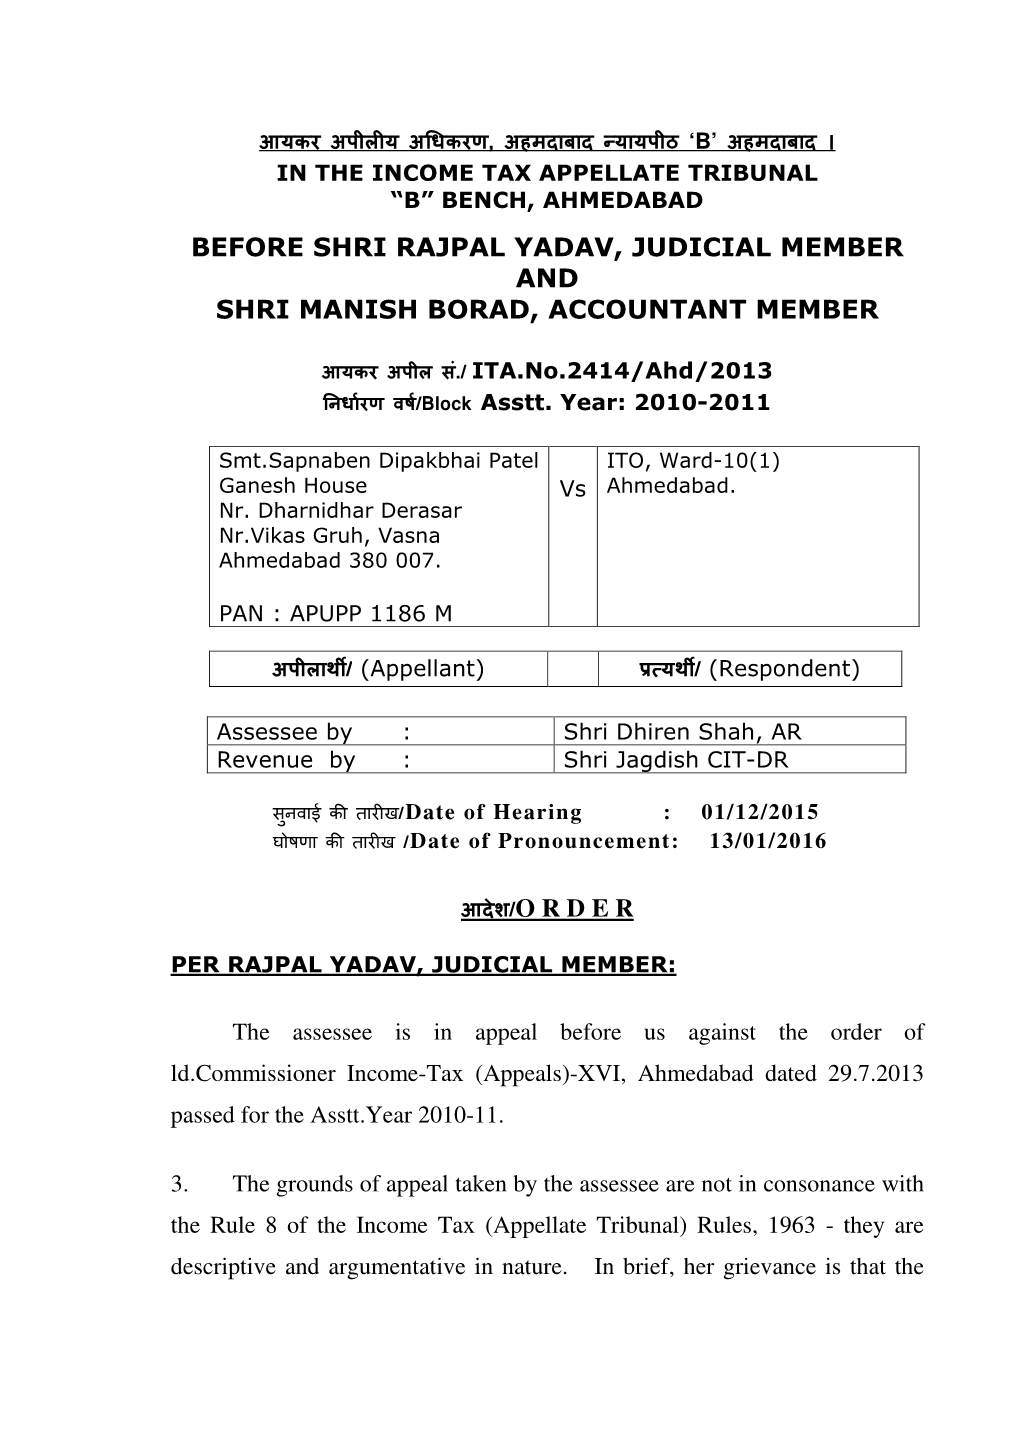 Before Shri Rajpal Yadav, Judicial Member and Shri Manish Borad, Accountant Member